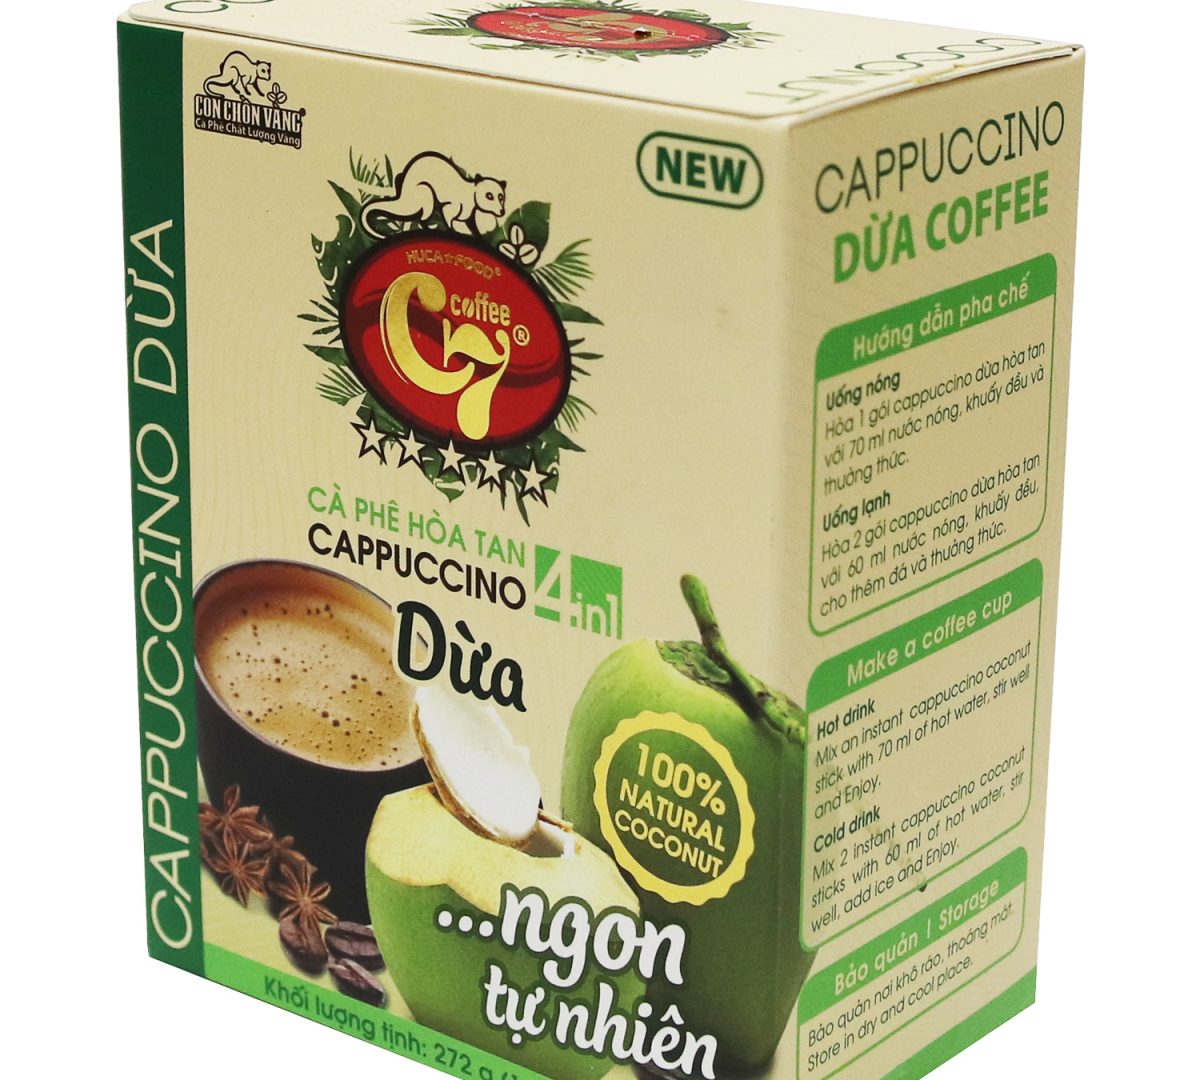 Cà phê cốt dừa 4in1 cappuccino